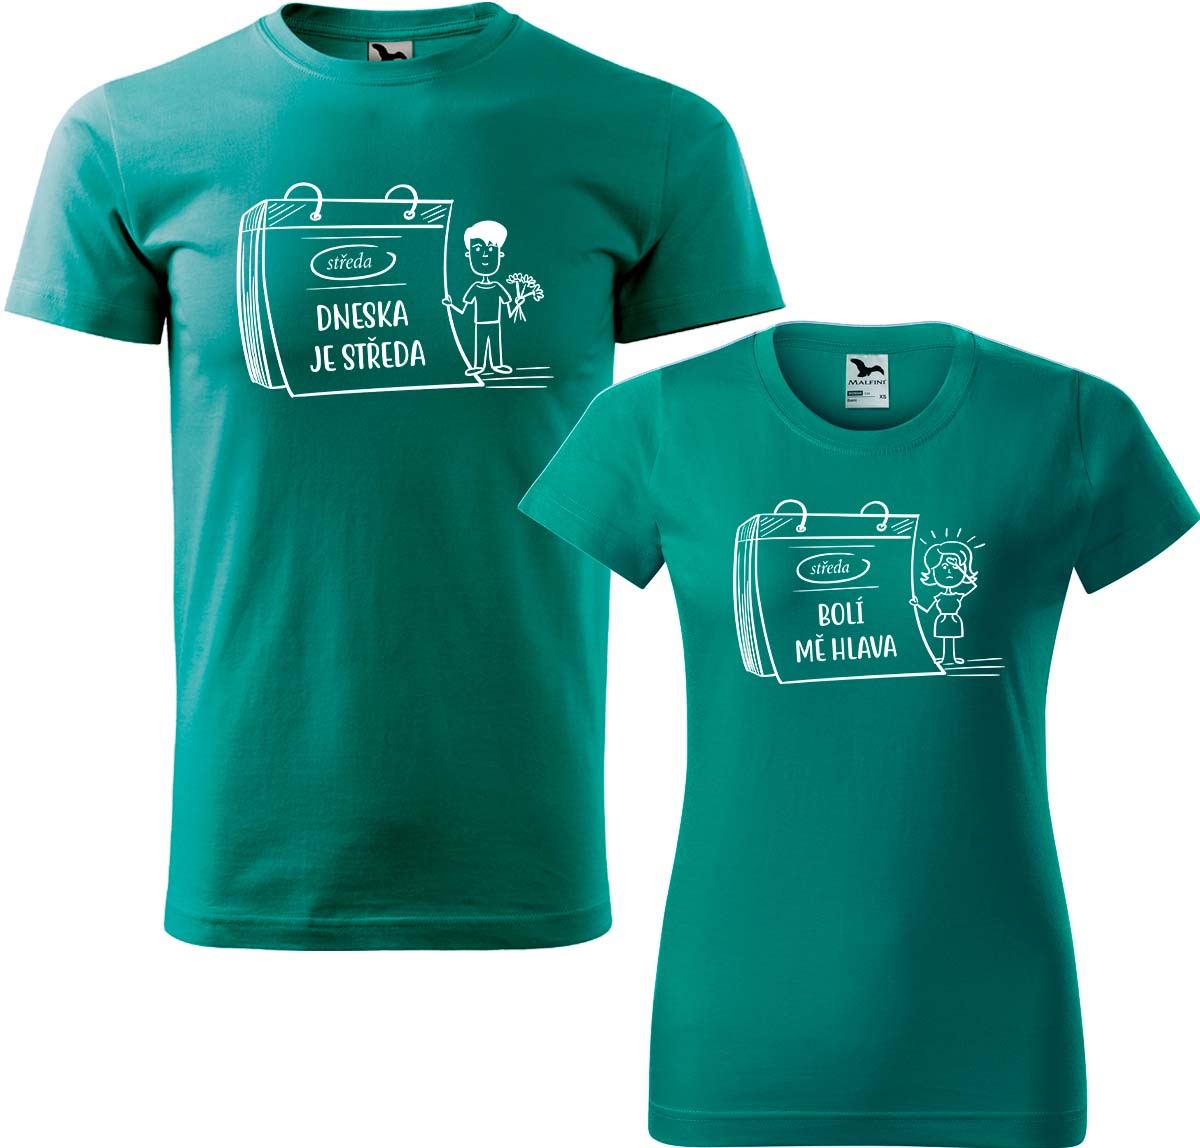 Trička pro páry - Dneska je středa Barva: Emerald (19), Velikost dámské tričko: S, Velikost pánské tričko: 3XL